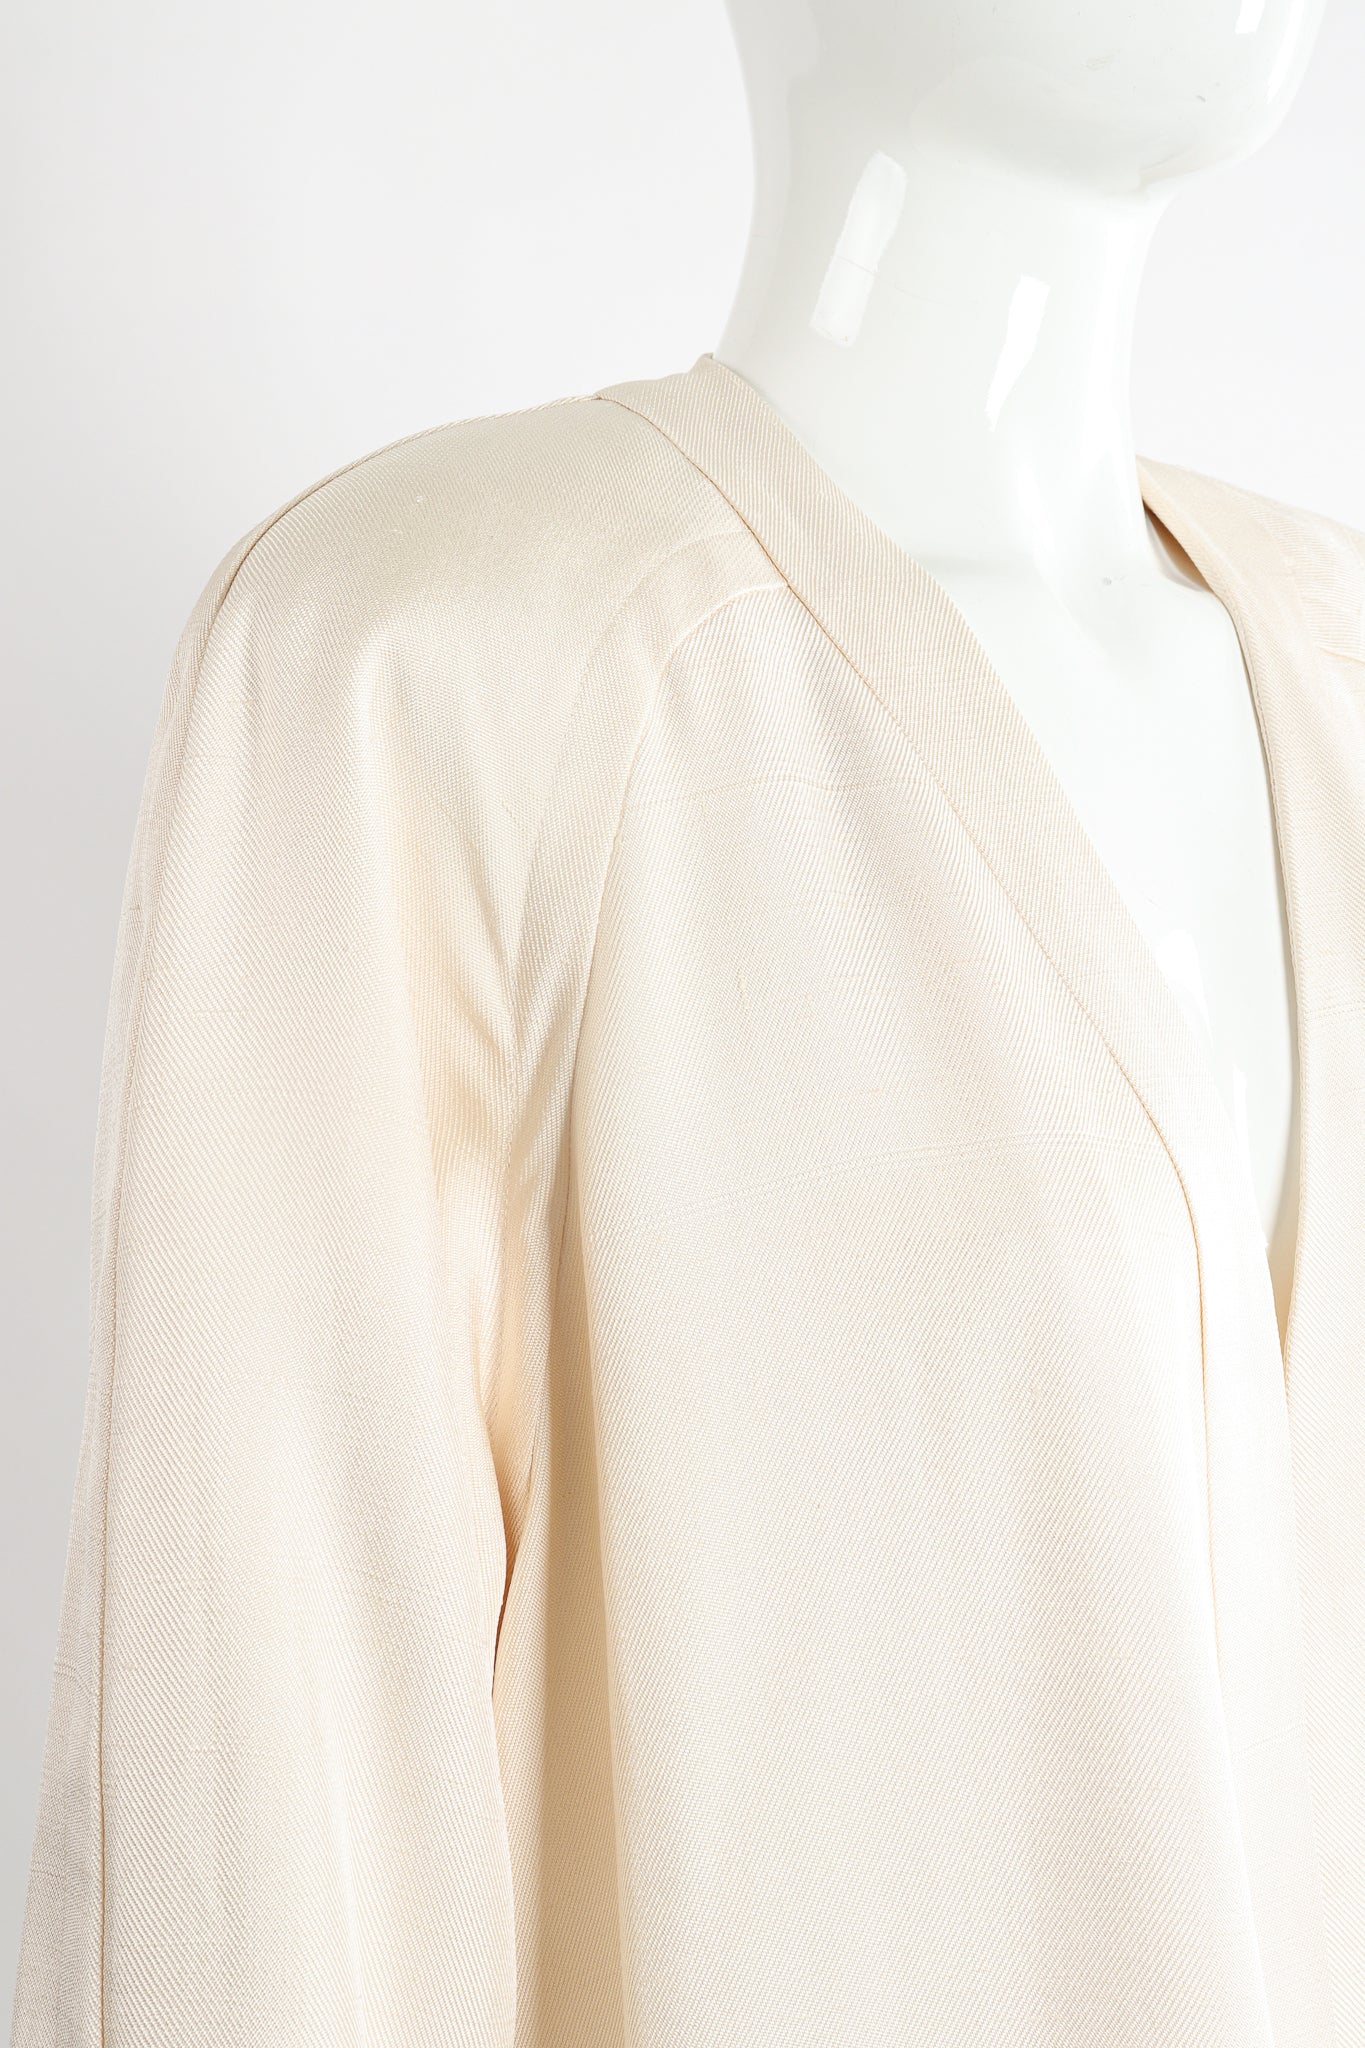 Vintage Peggy Jennings Saks Fifth Ave Silk Opera Coat on Mannequin shoulder curve at Recess LA